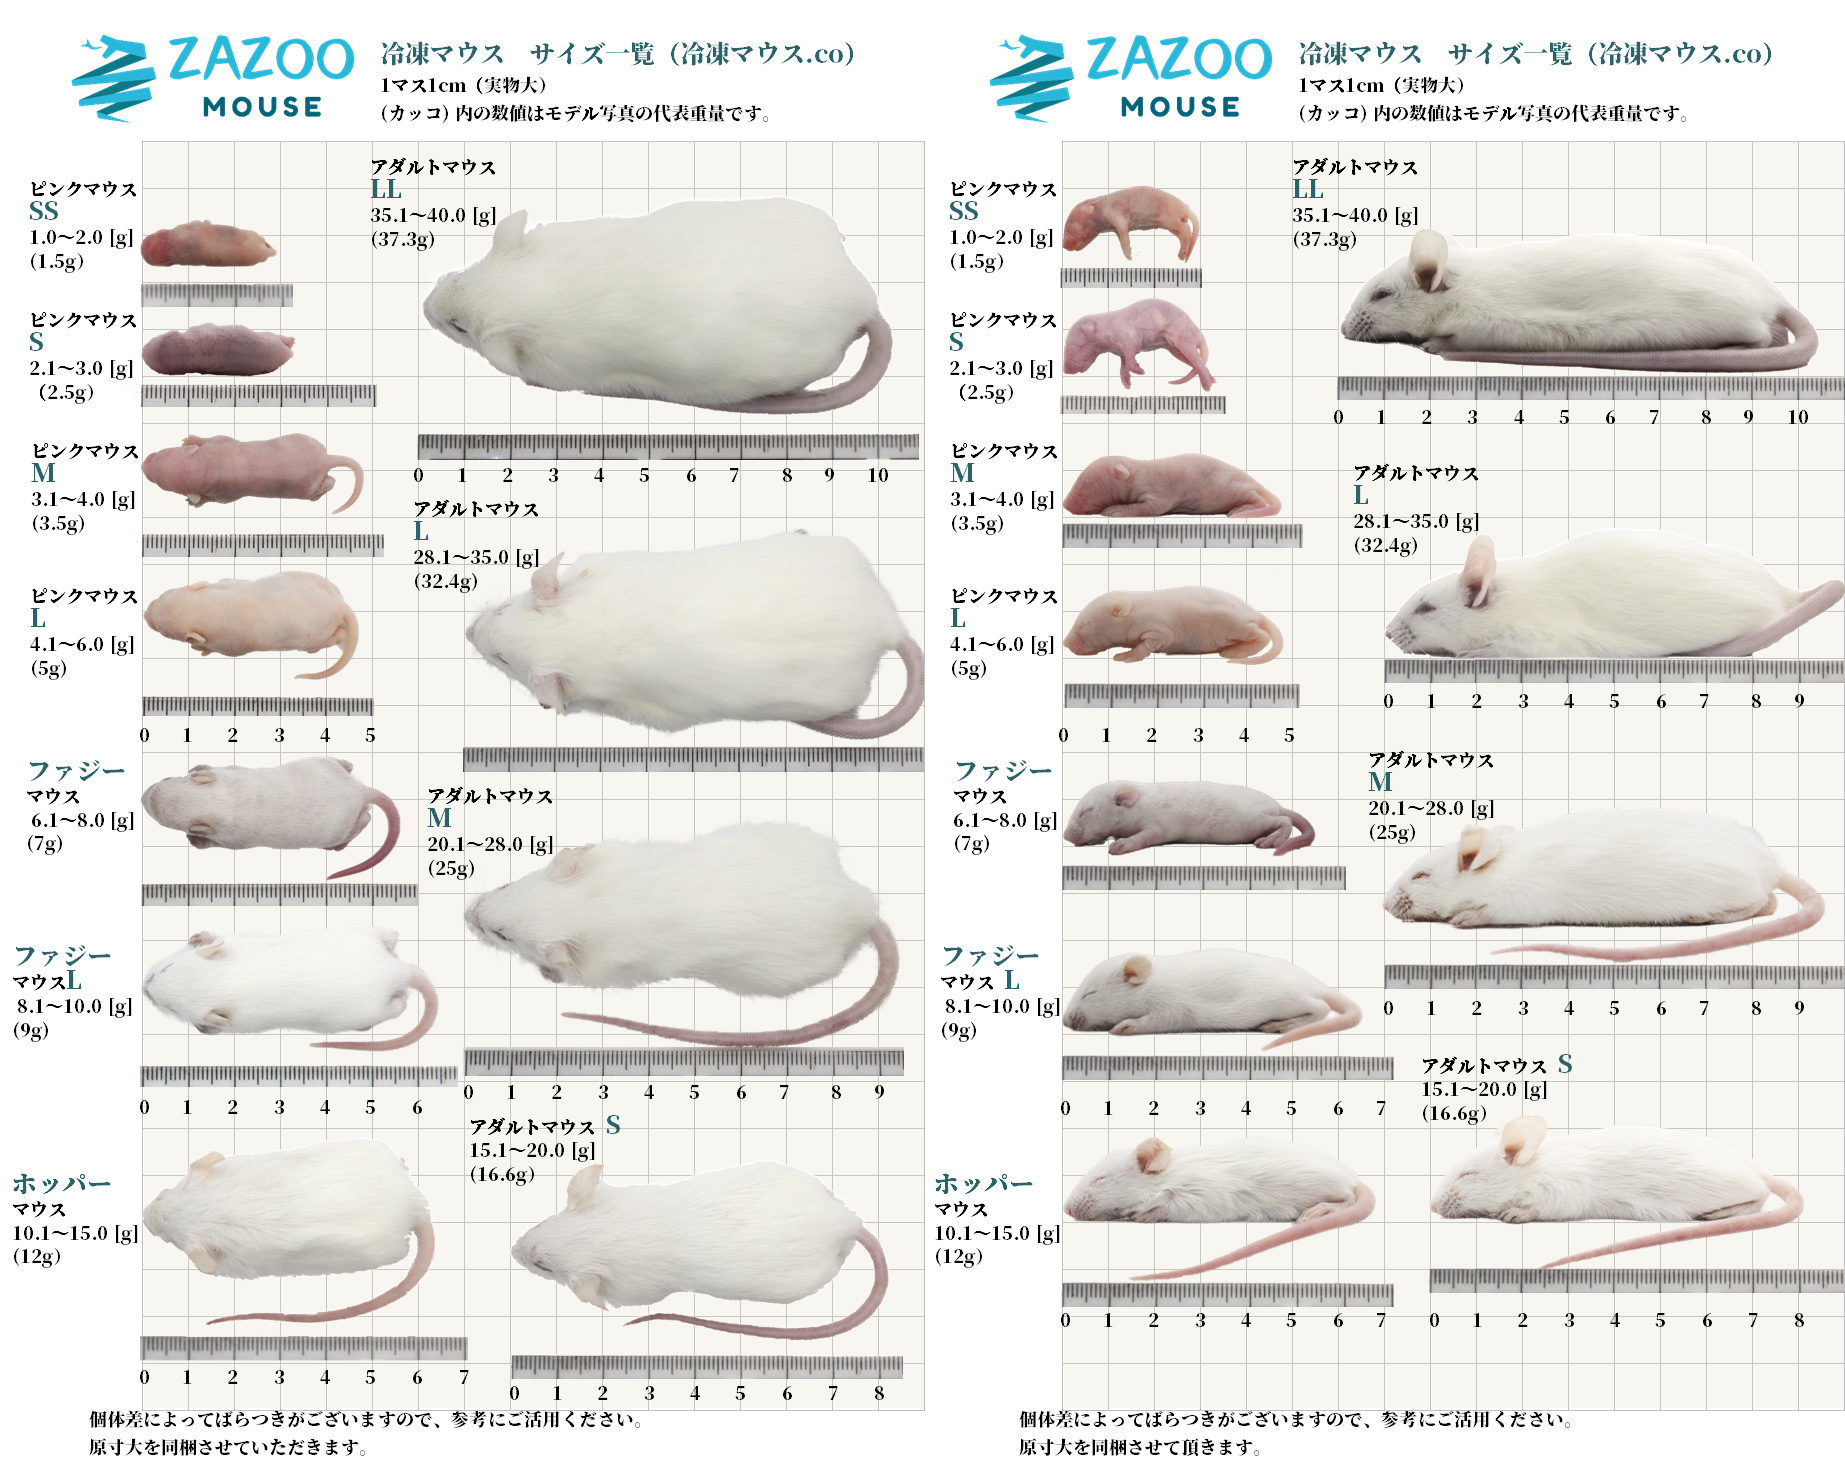 ZAZOO 冷凍マウスドットコム | あなたのペットがいつまでも健康で 